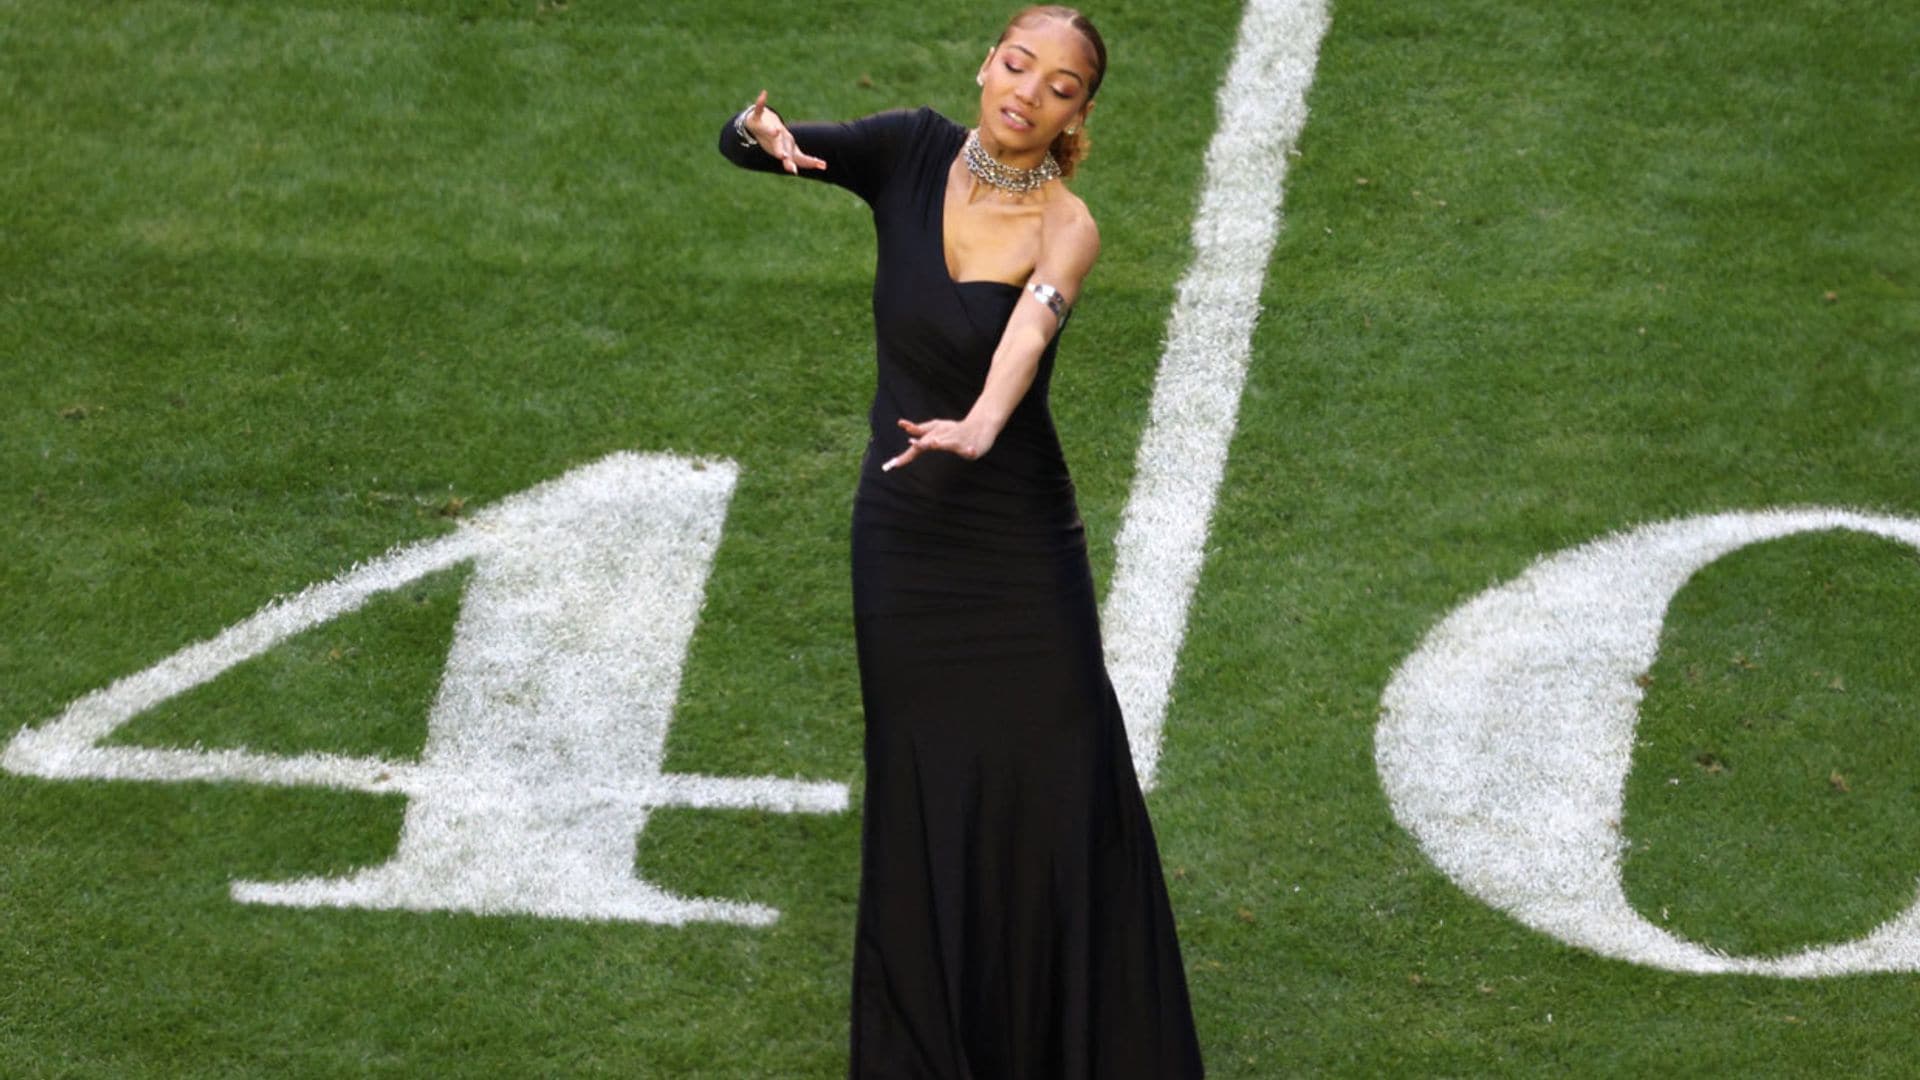 Conoce a la joven intérprete de signos que se hizo viral con Rihanna en la Super Bowl